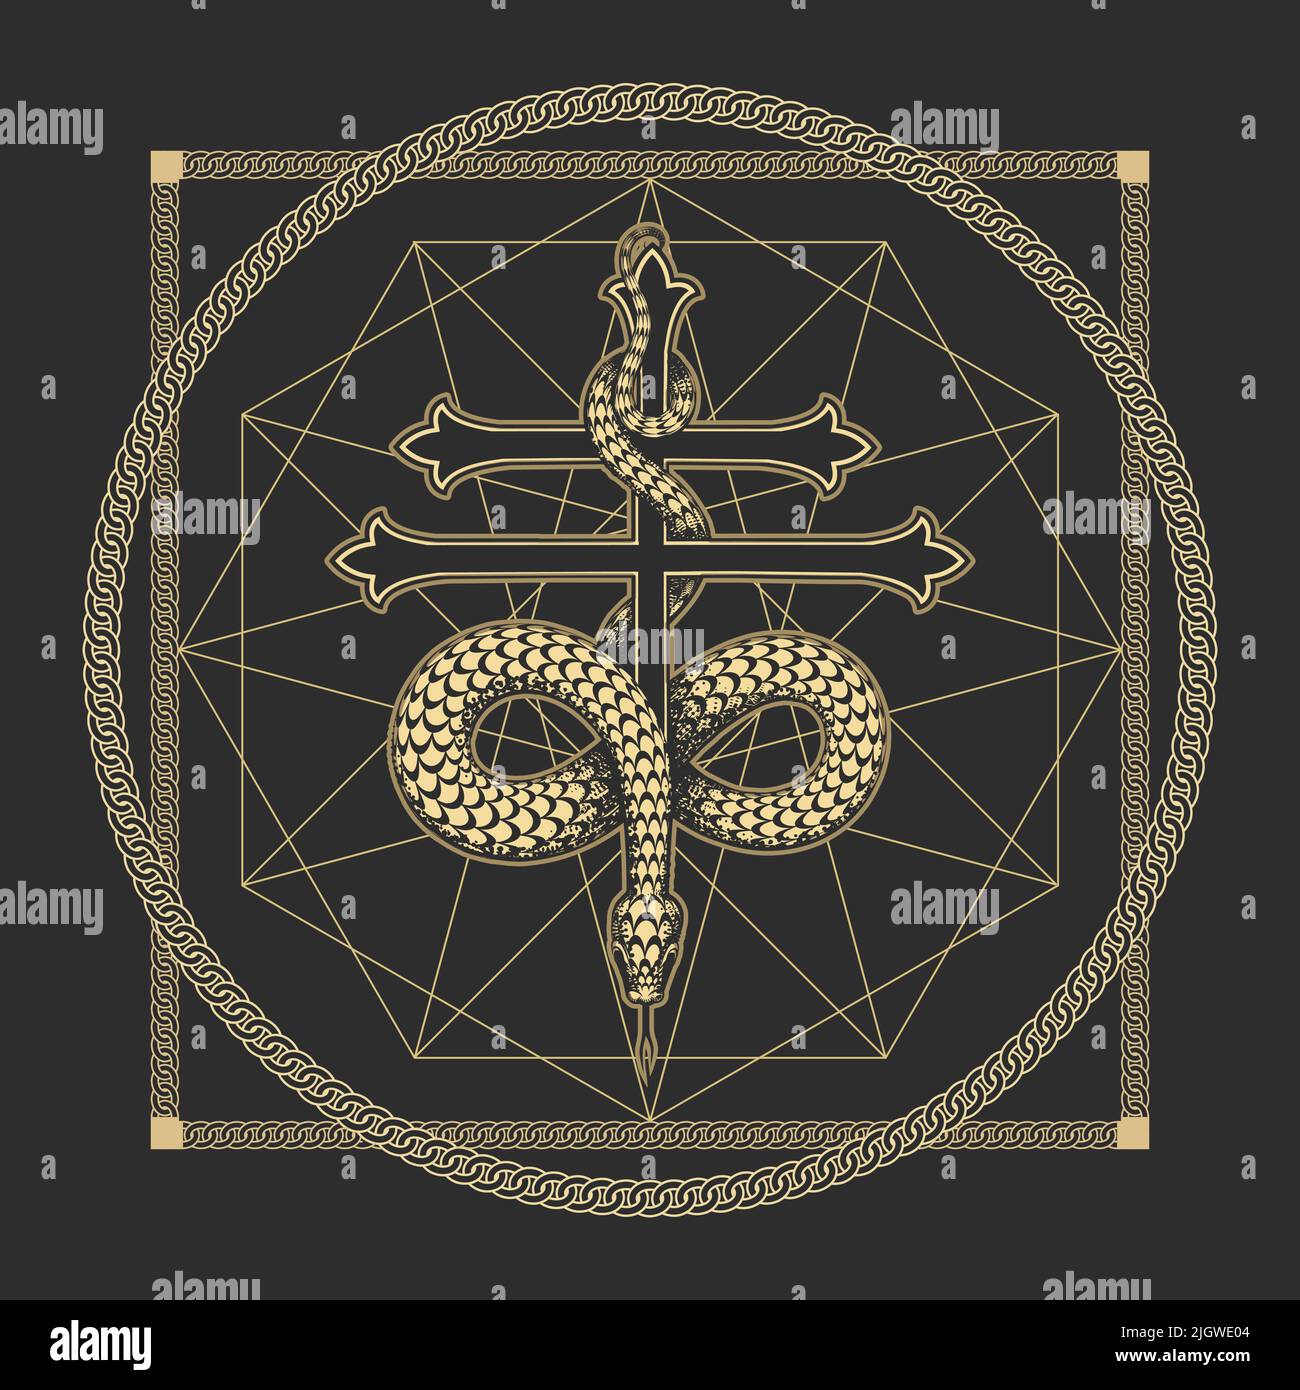 Symbole ésotérique occulte médiéaval de la sagesse serpent sur une croix. Illustration vectorielle Illustration de Vecteur